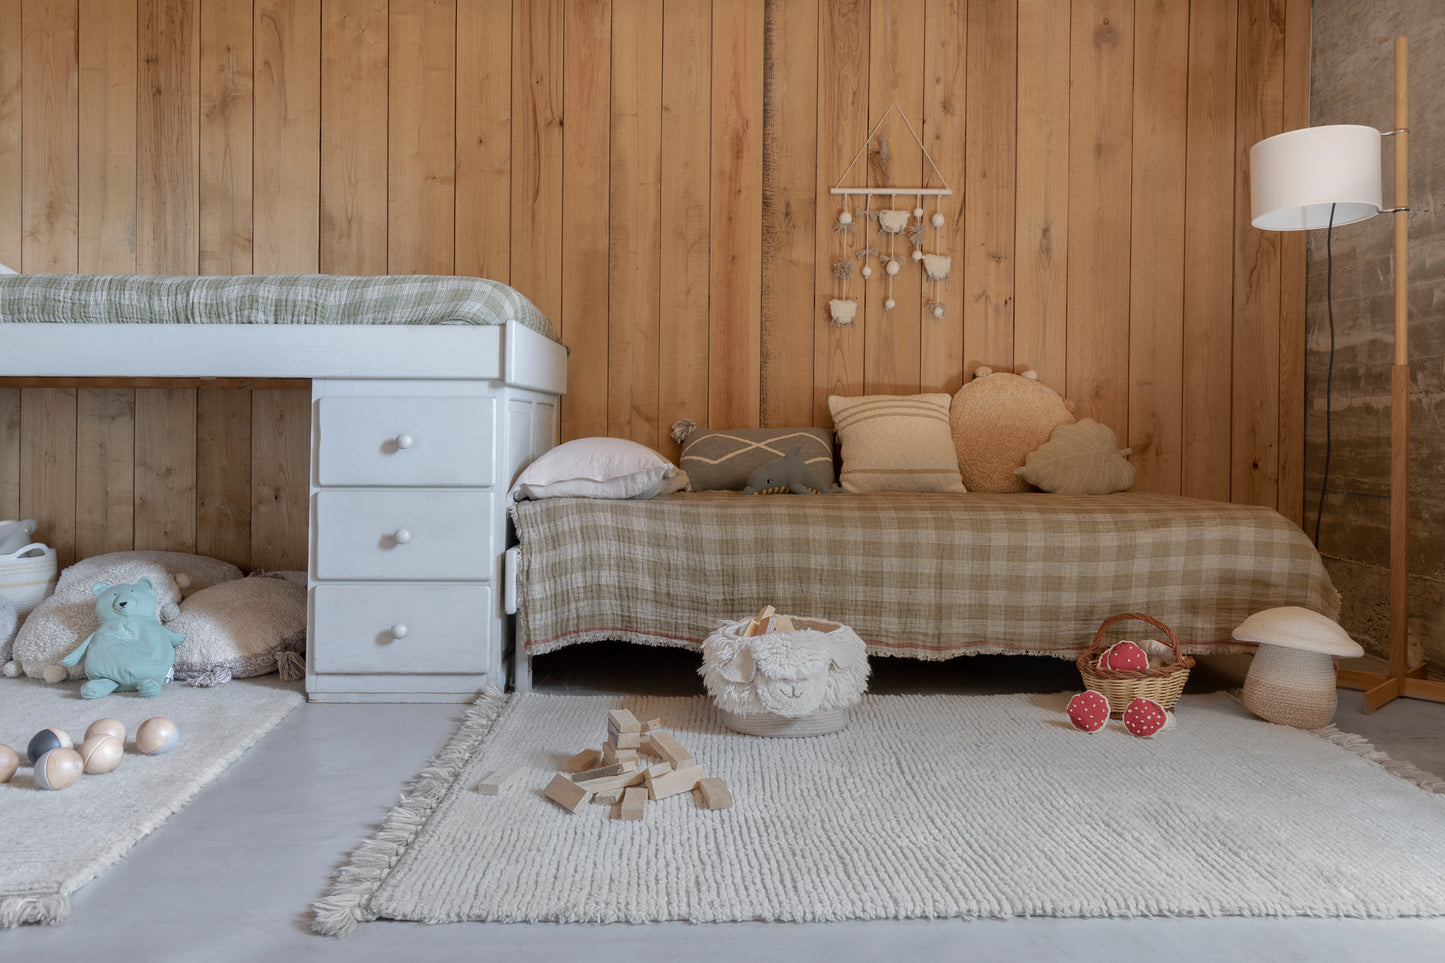 Woolable washable rug – Koa Sandstone